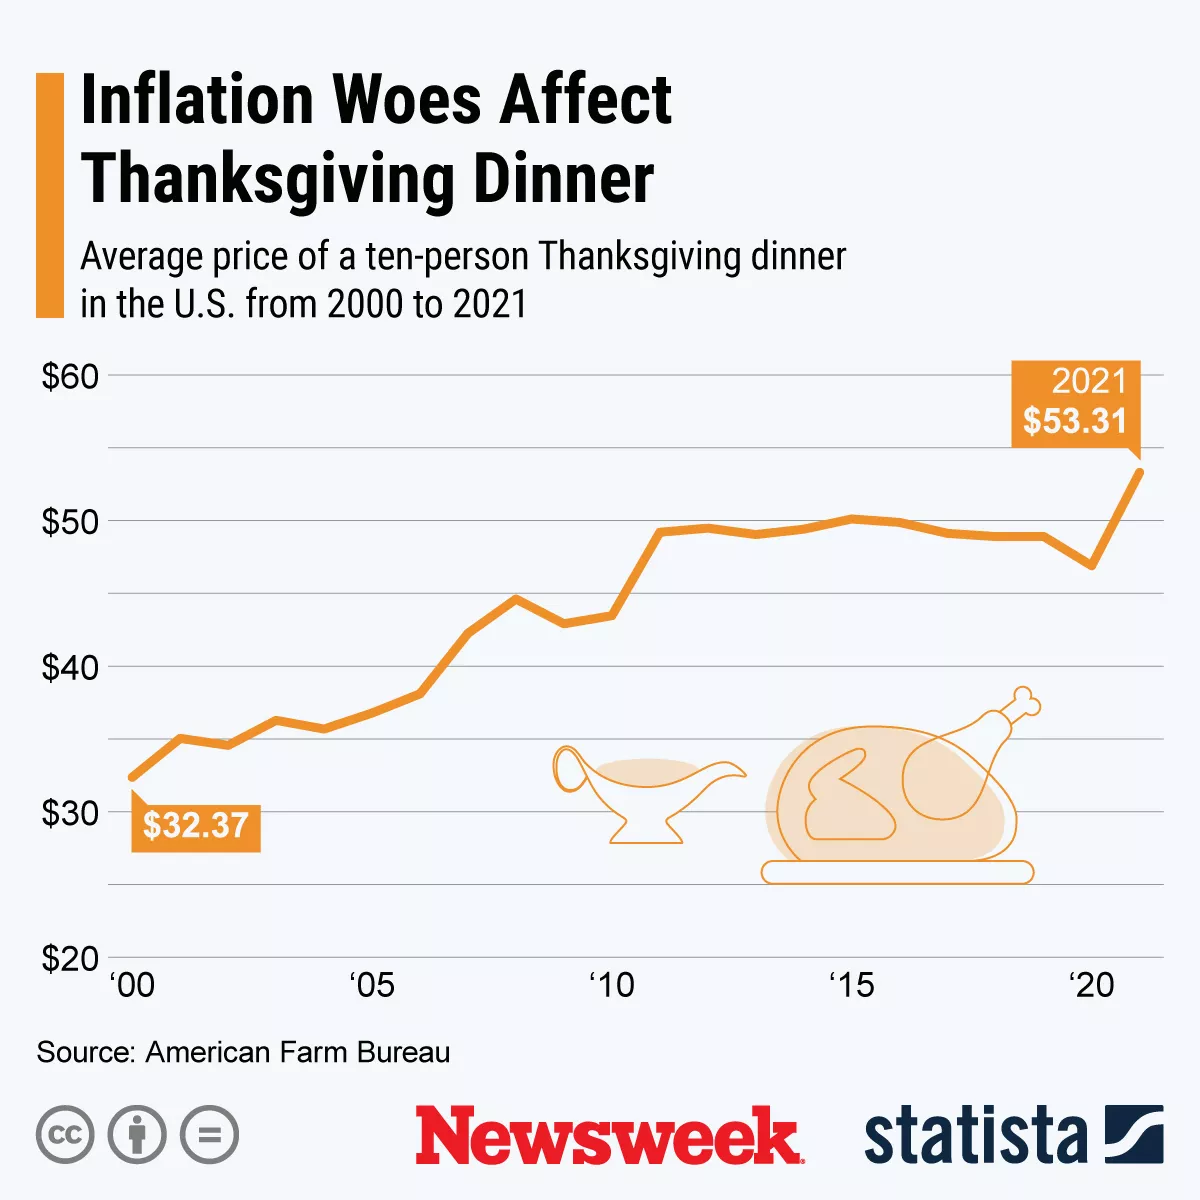  grafisk viser inflation indvirkning på Thanksgiving.